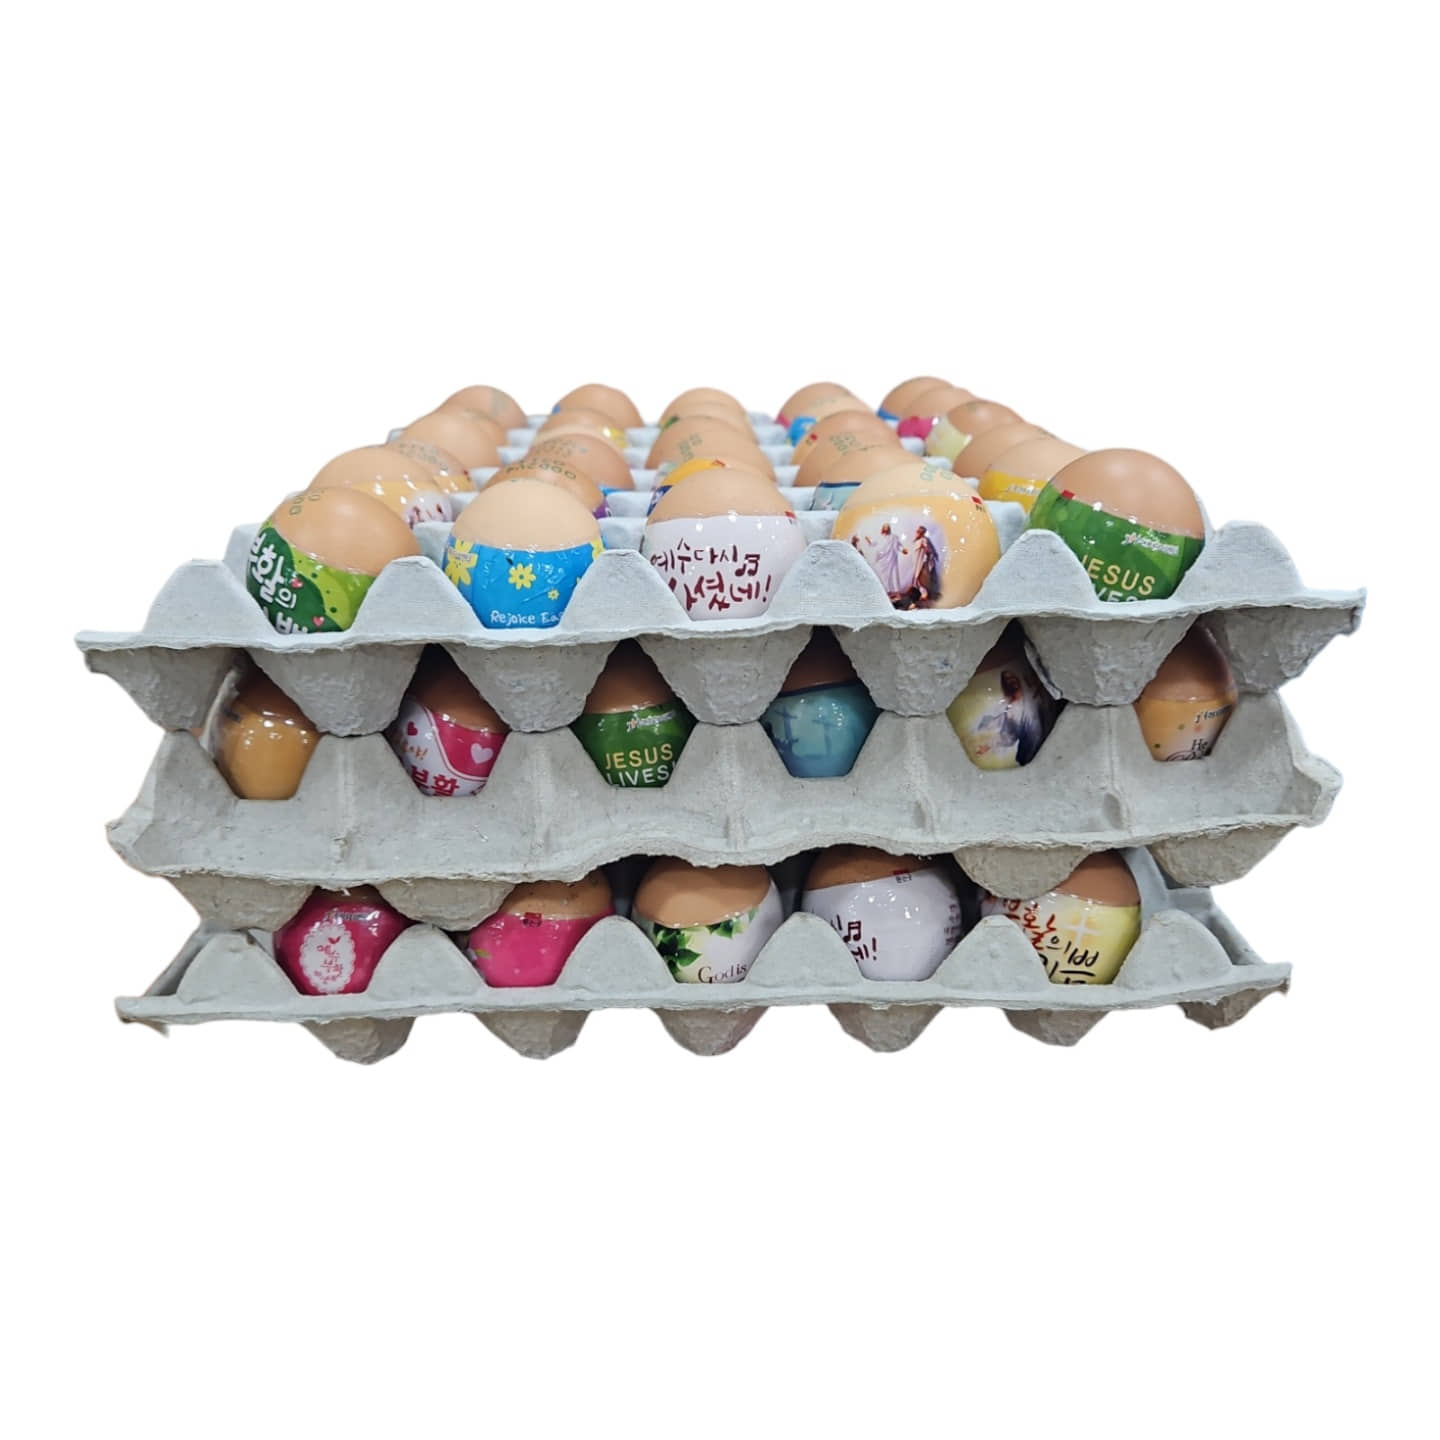 부활절 구운계란 3판 120개 (수축필름 띄지 포장 가능) 구운달걀